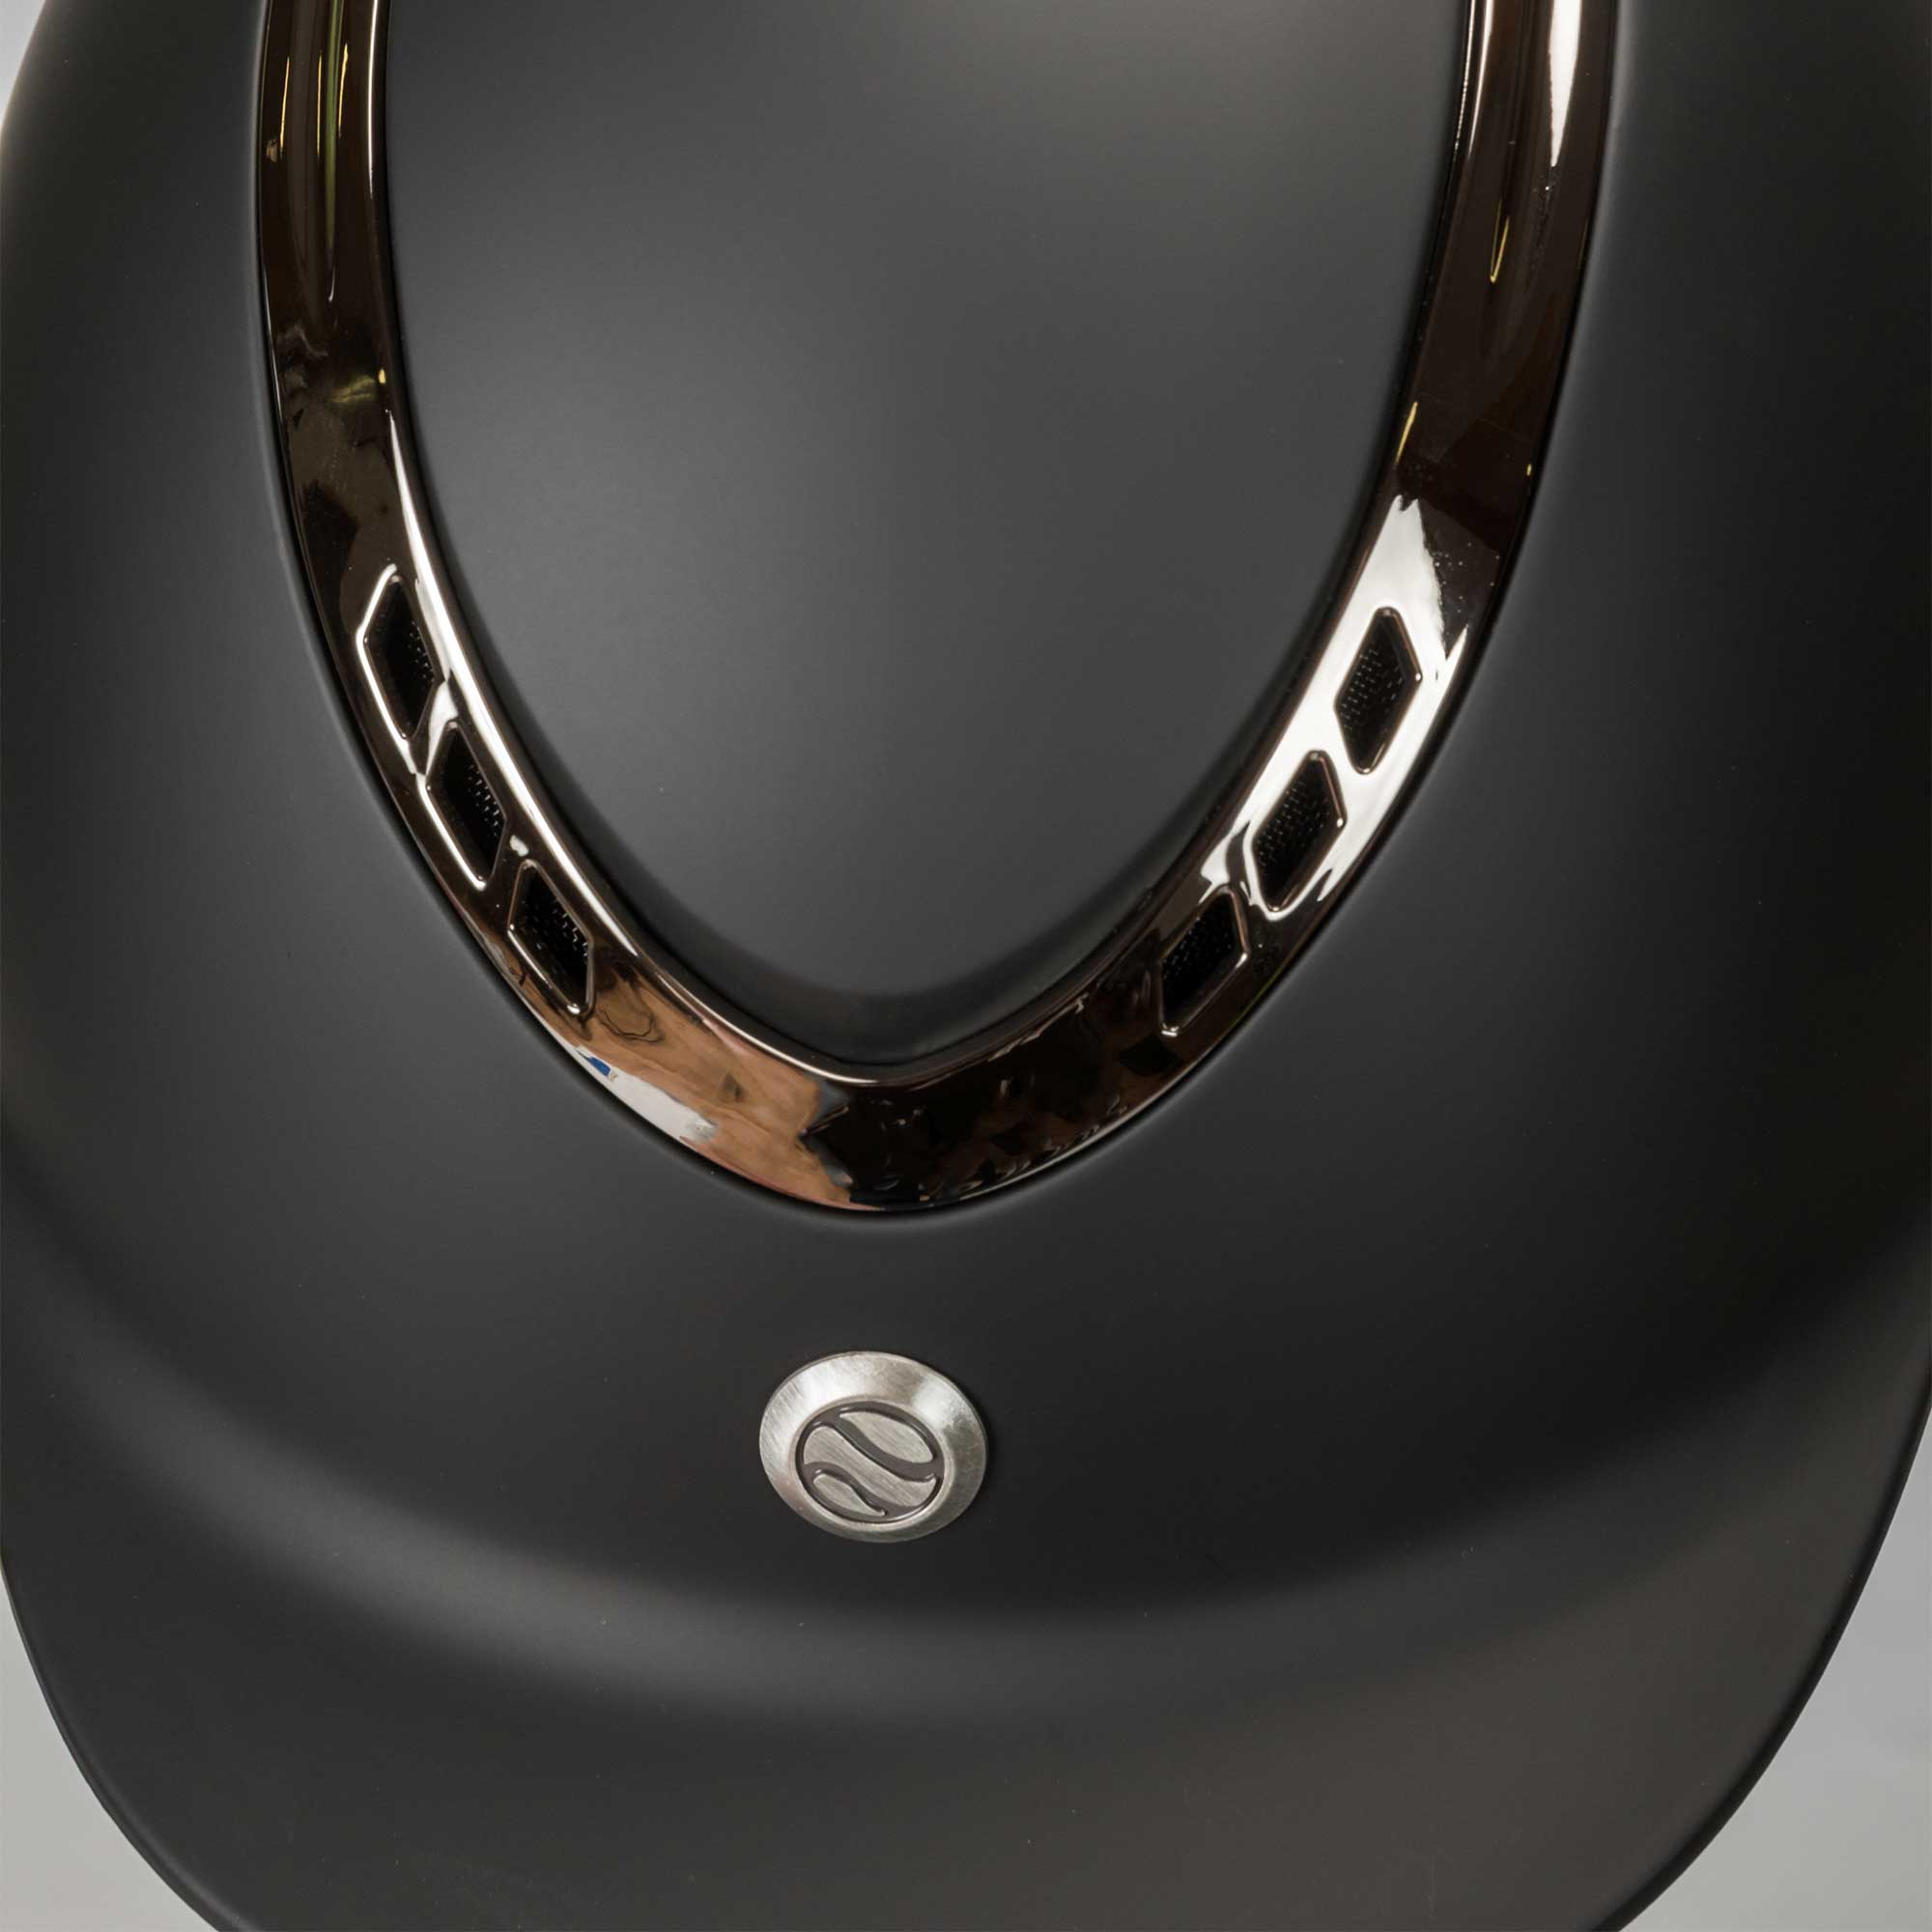 EQ3 "Pardus" smooth top with adjustable wheel - Black